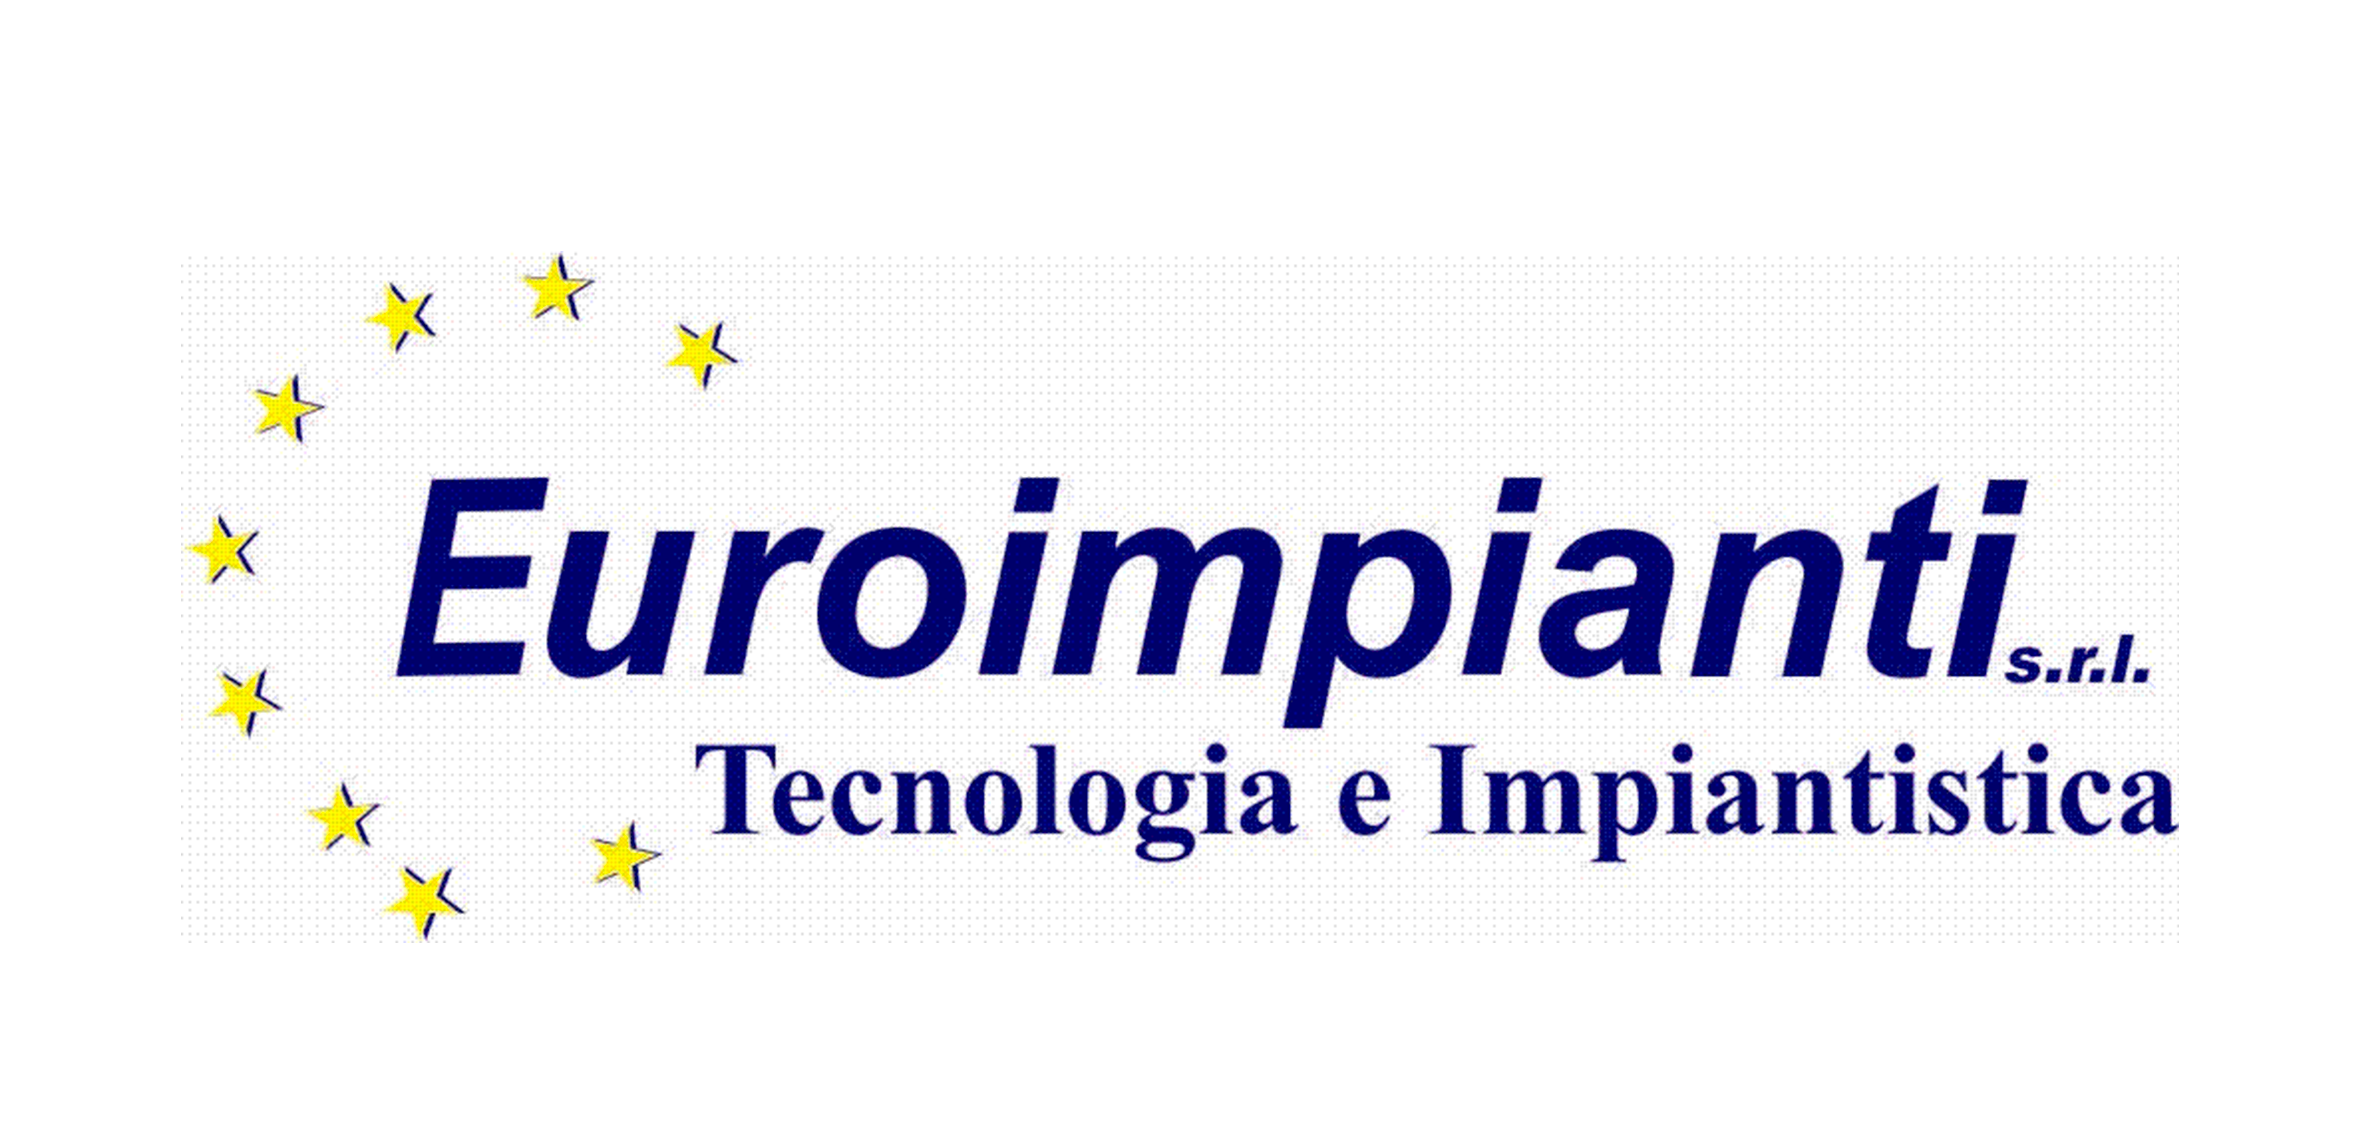 Euroimpianti 021